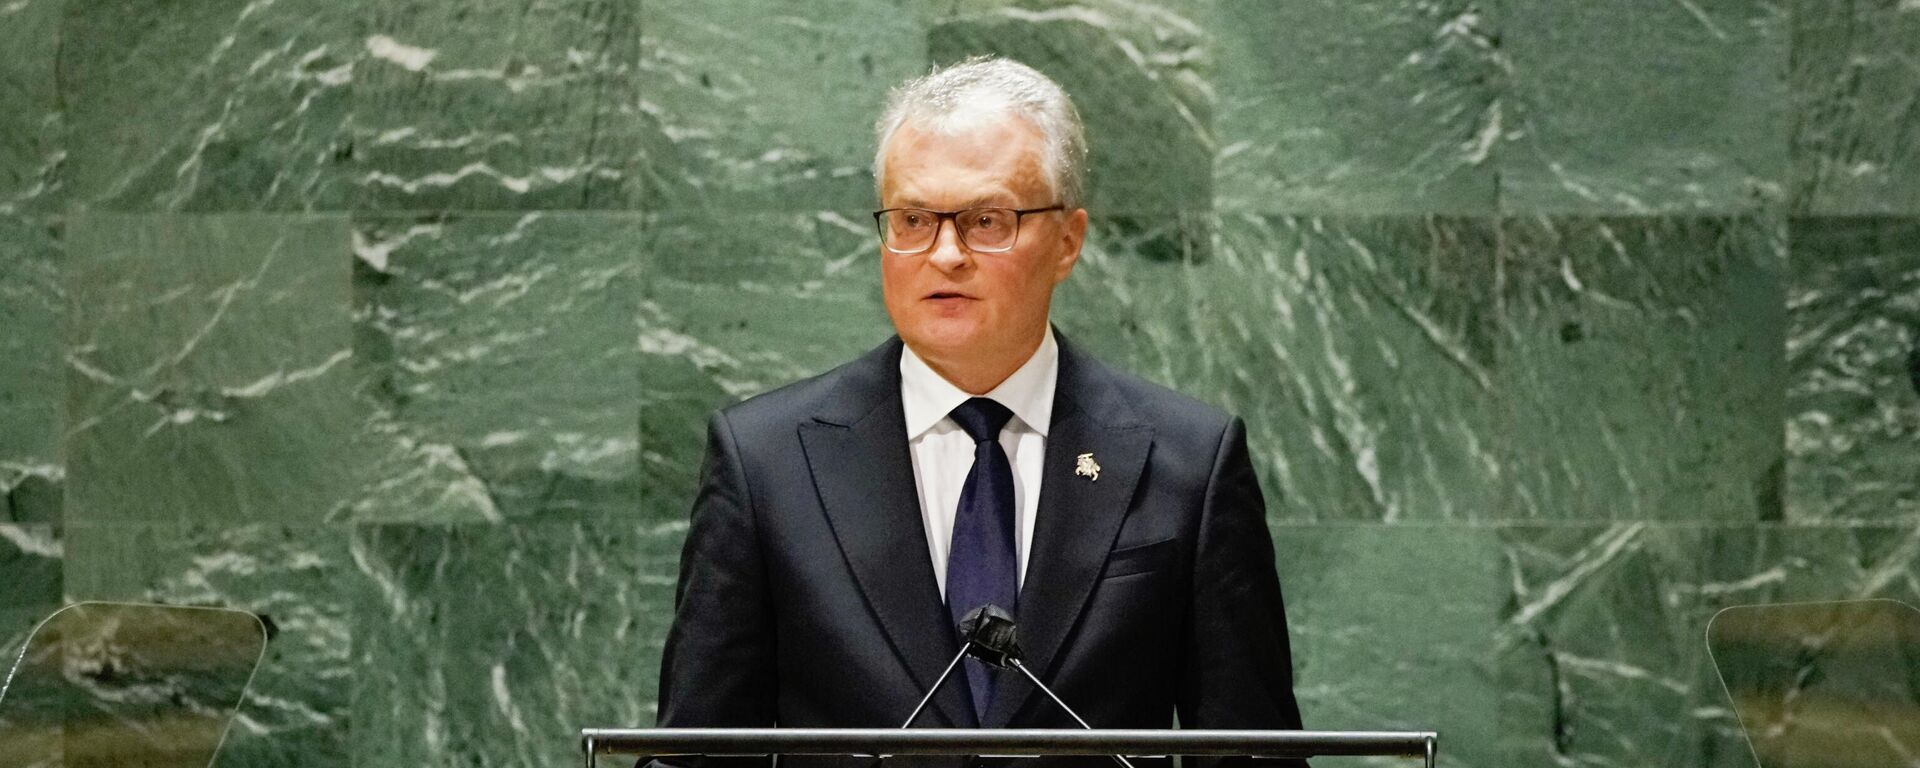 Президент Литвы Гитанас Науседа выступил на Генеральной Ассамблее ООН - Sputnik Lietuva, 1920, 24.09.2021